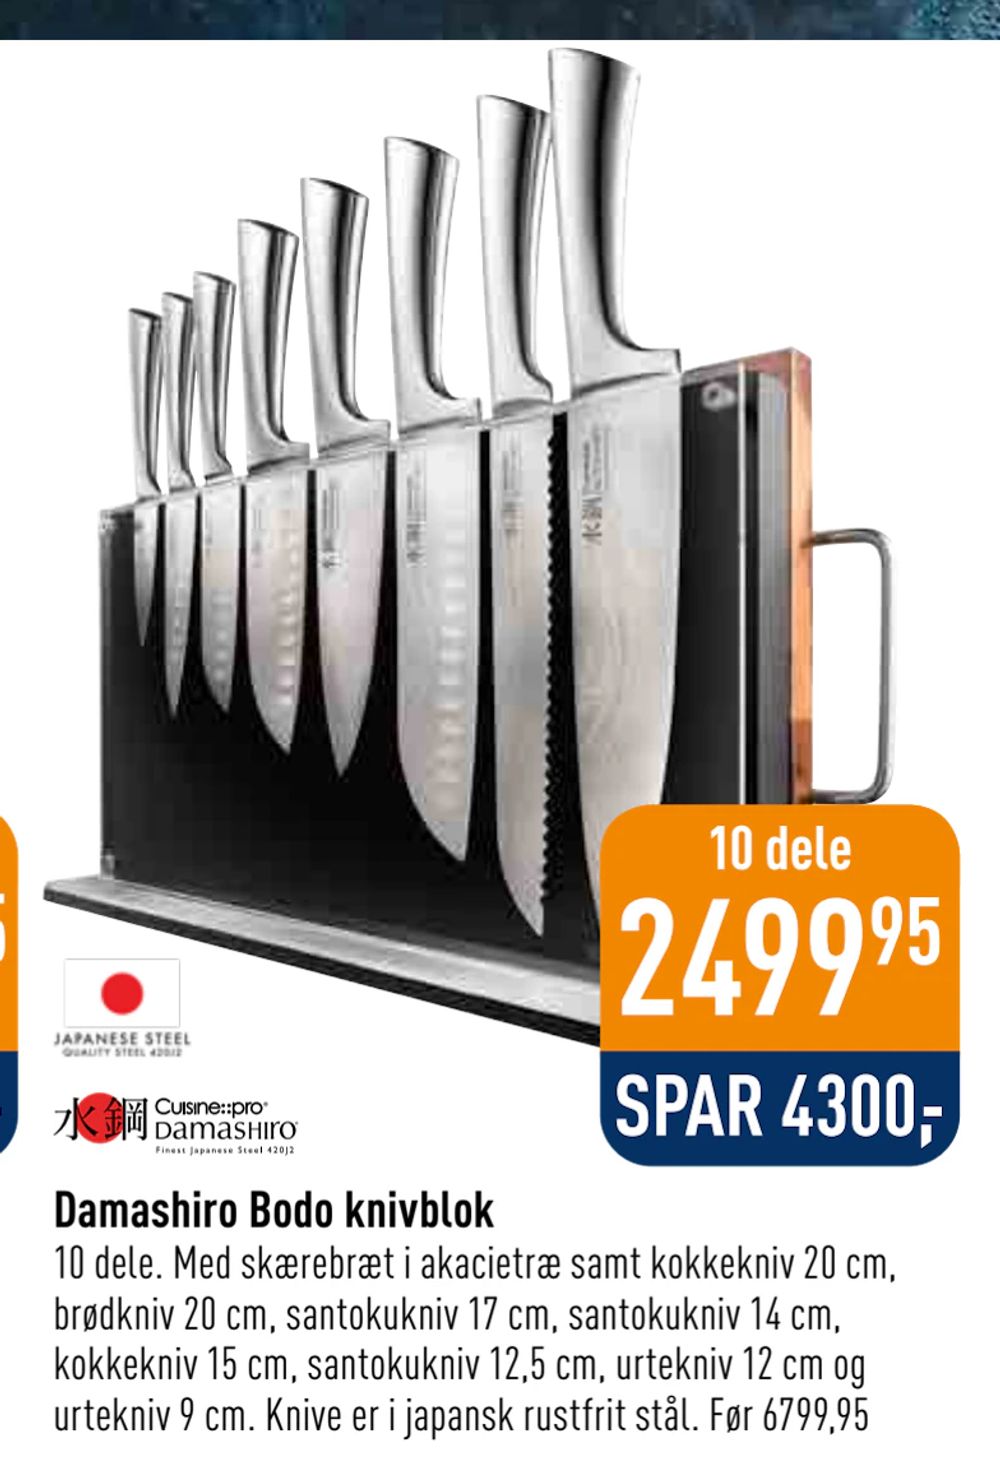 Tilbud på Damashiro Bodo knivblok fra Imerco til 2.499,95 kr.